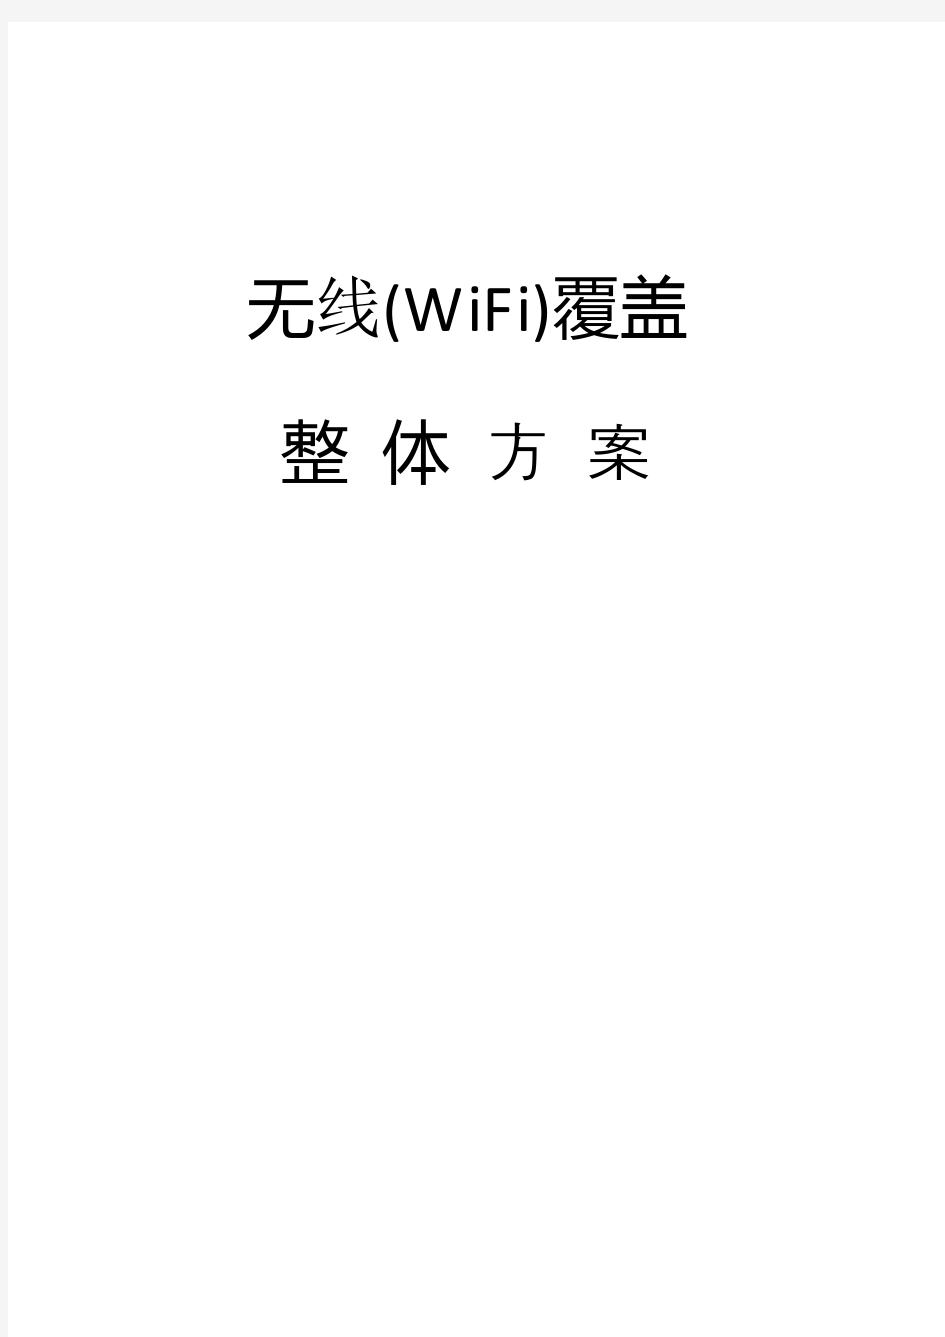 酒店无线WiFi覆盖方案